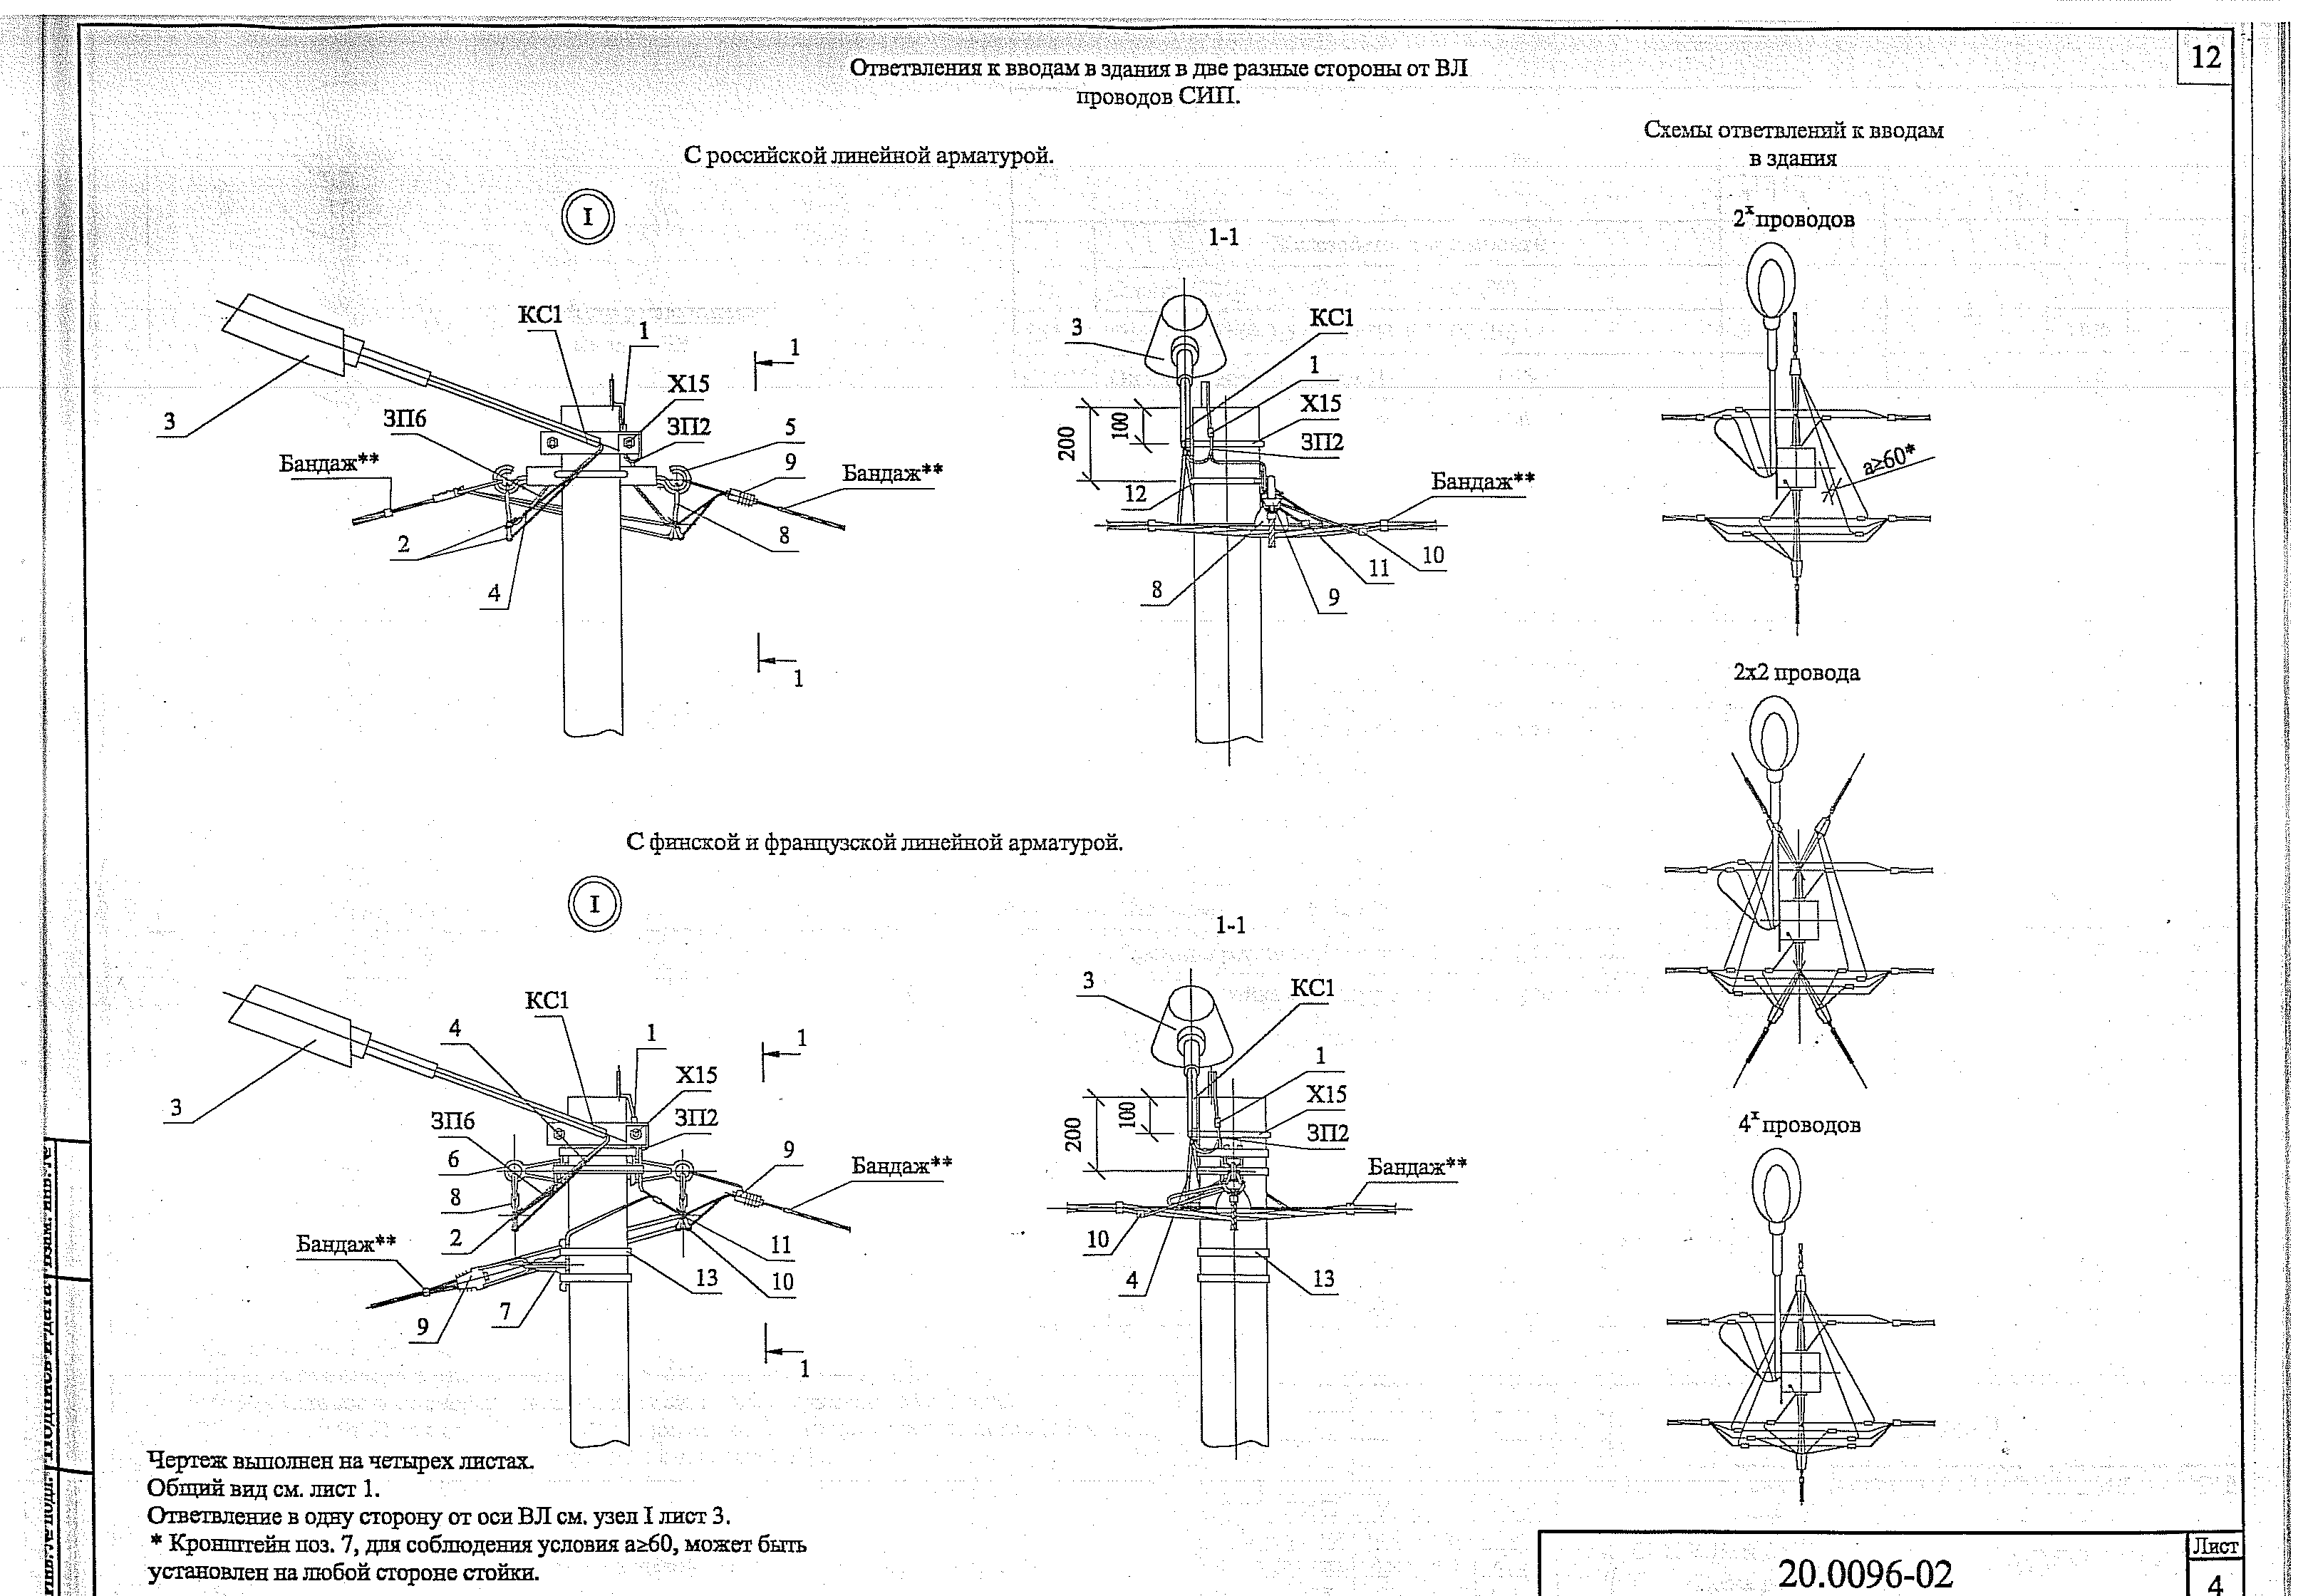 Соединения проводов воздушной линии